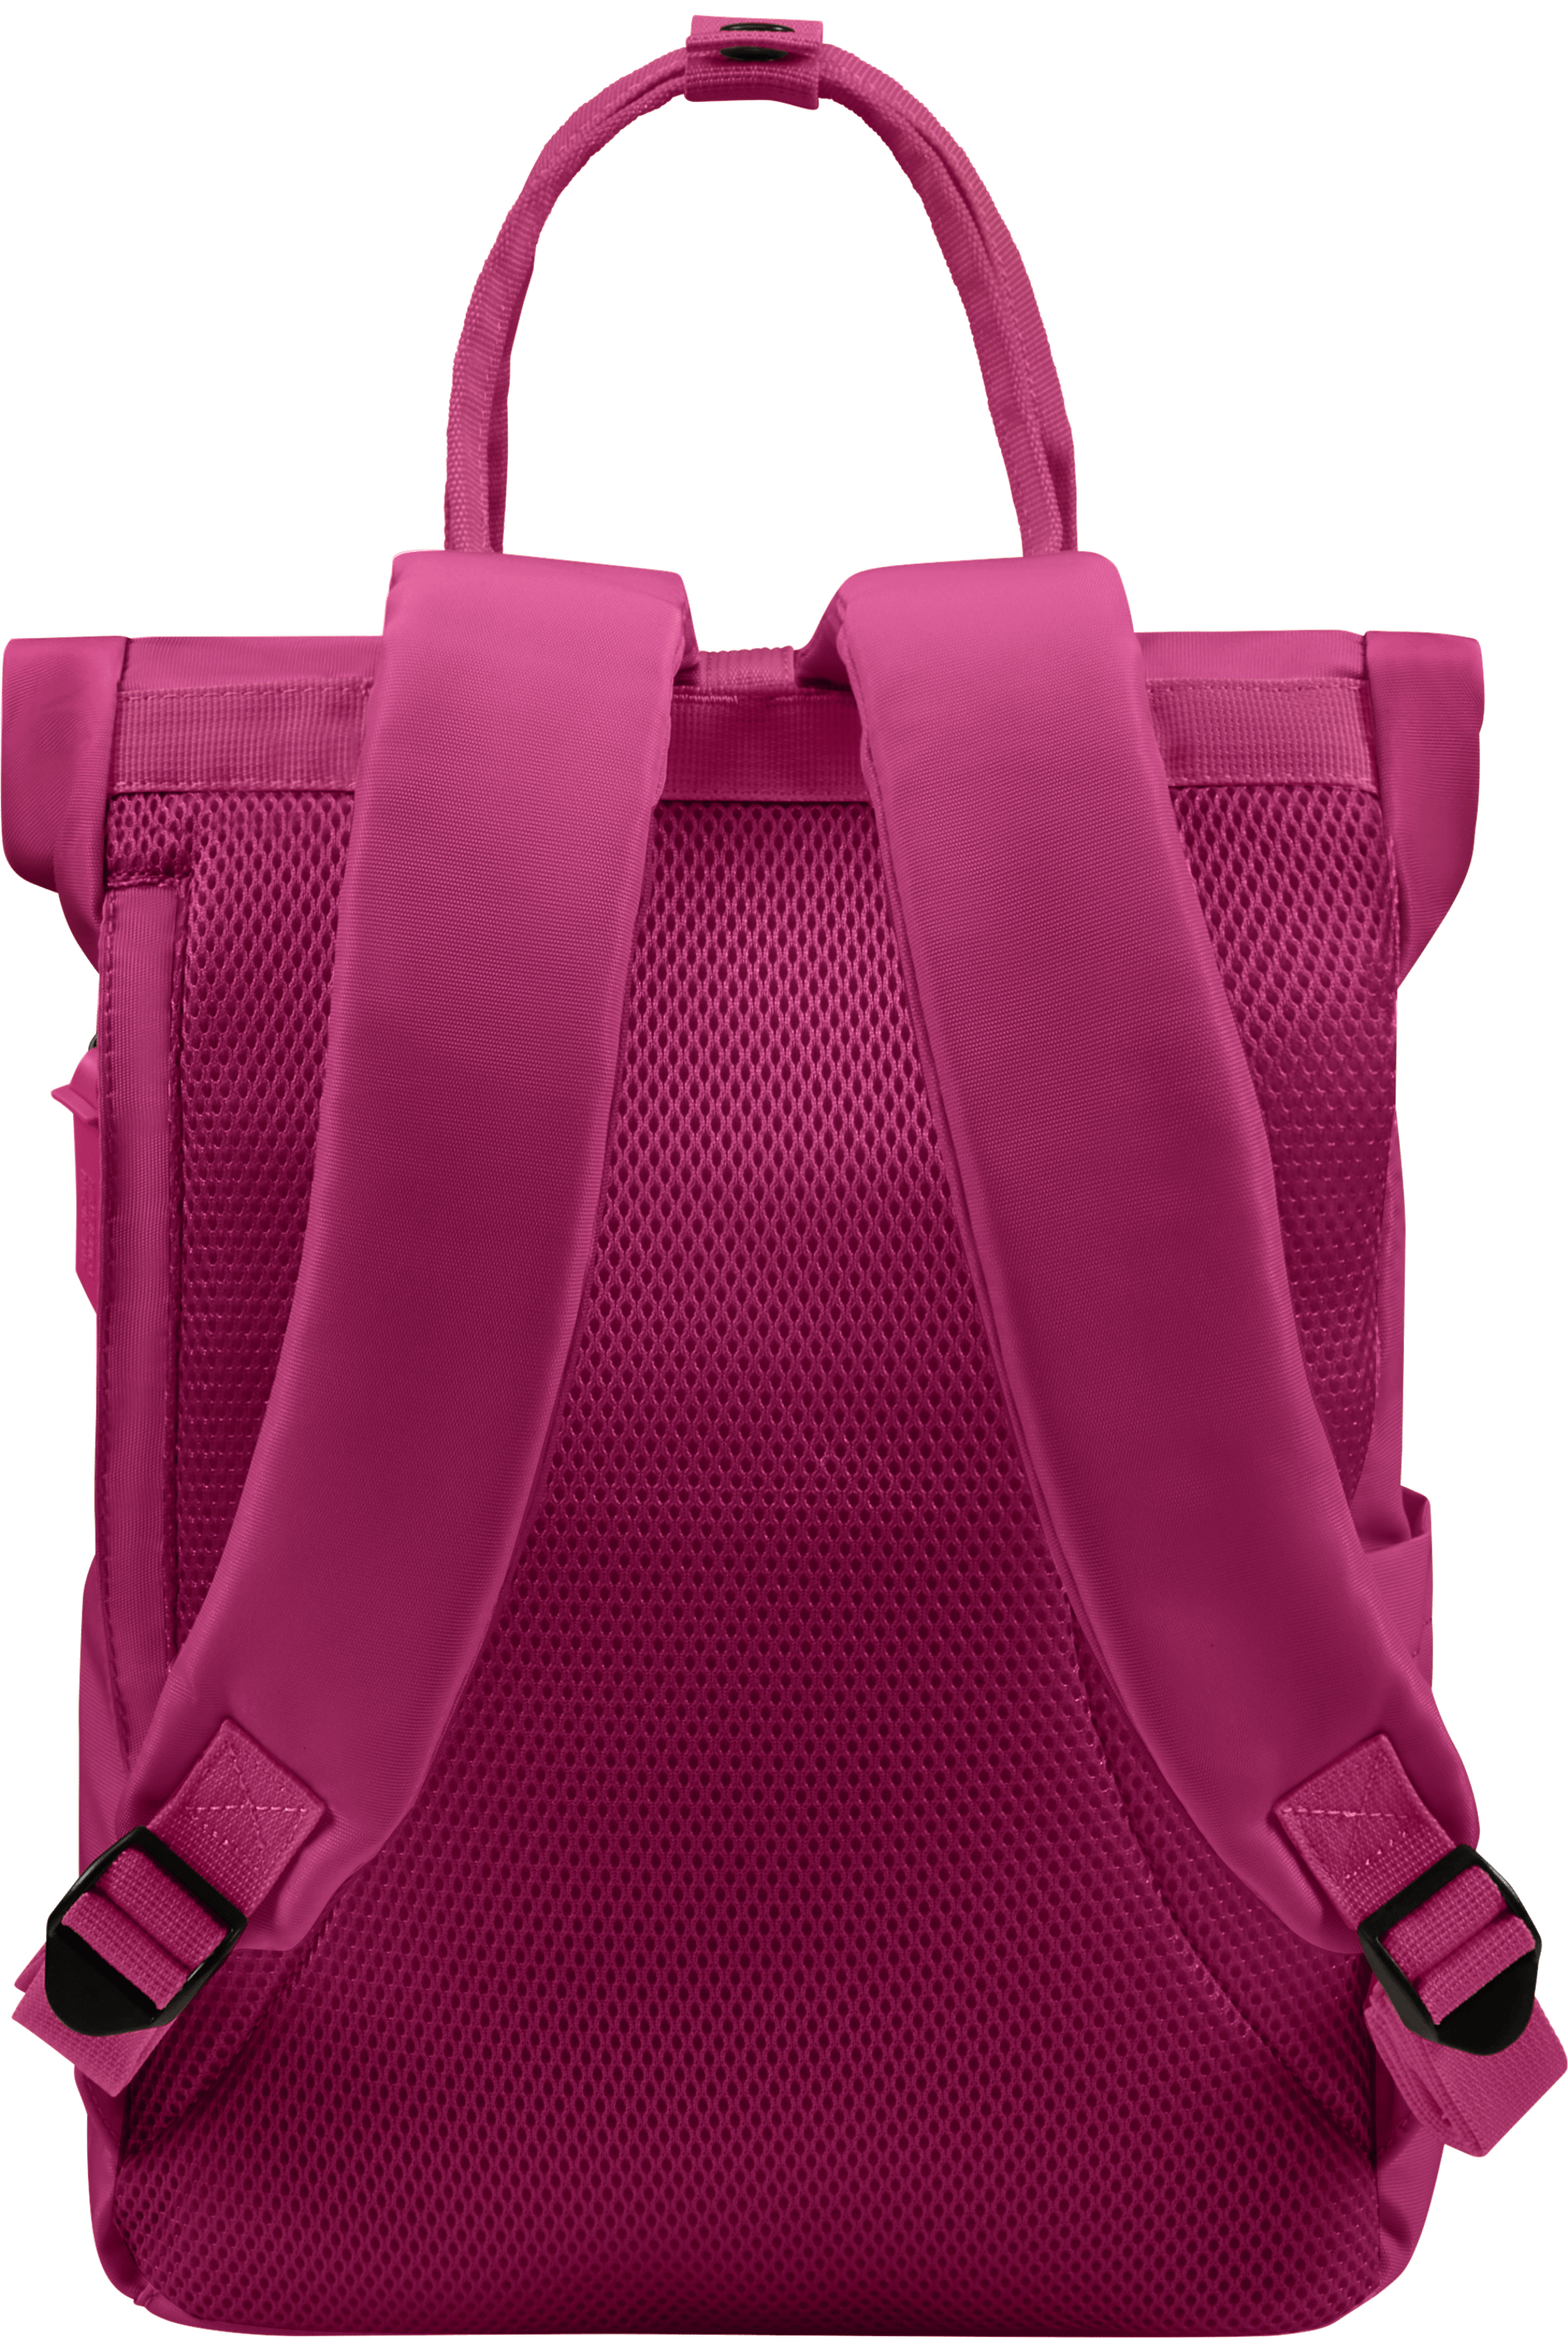 Urban Groove Ug25 Tote Backpack 15.6′